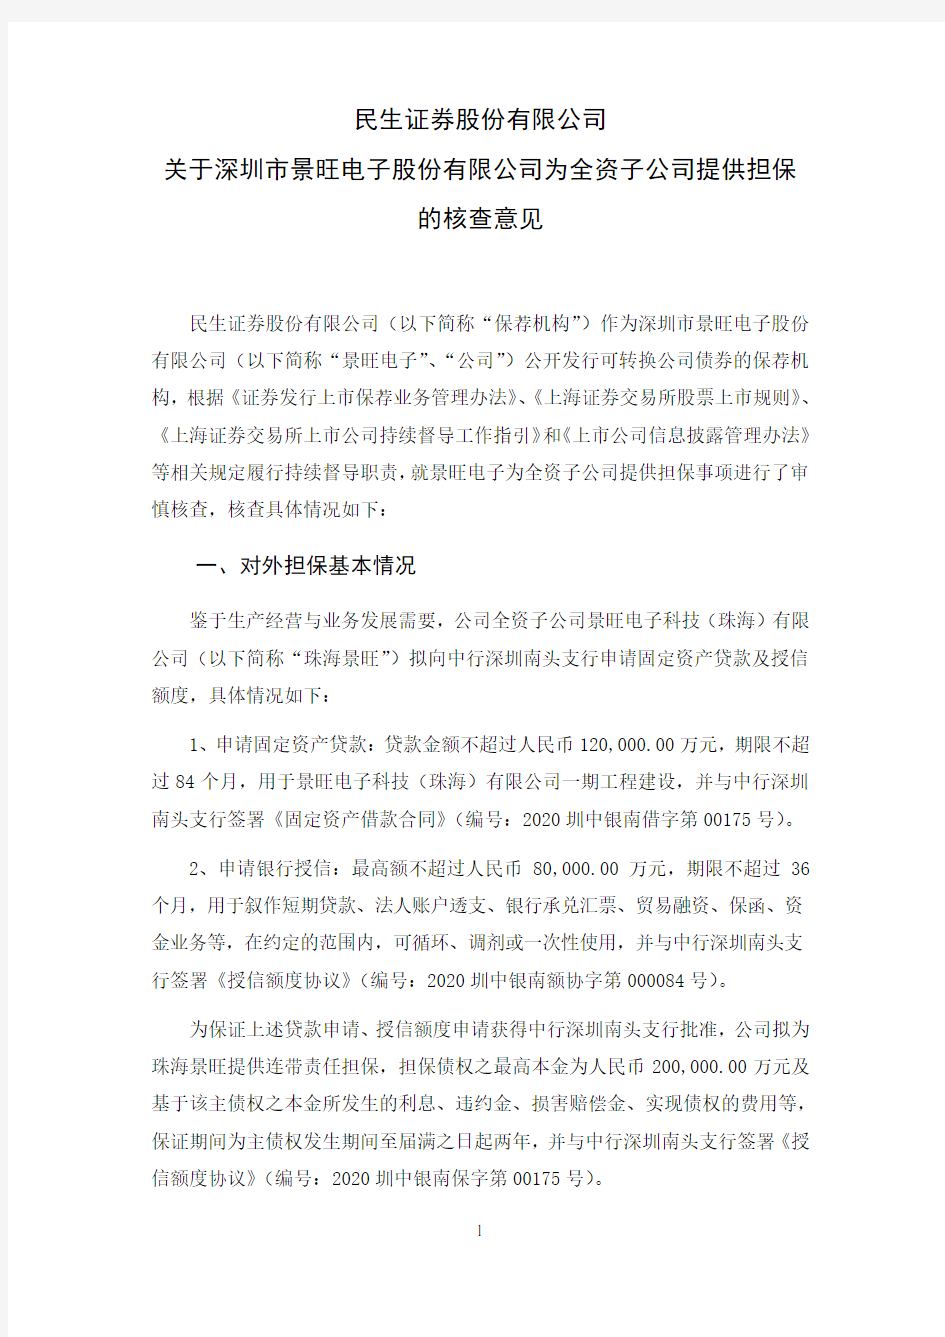 603228民生证券股份有限公司关于深圳市景旺电子股份有限公司为全资子2020-11-19